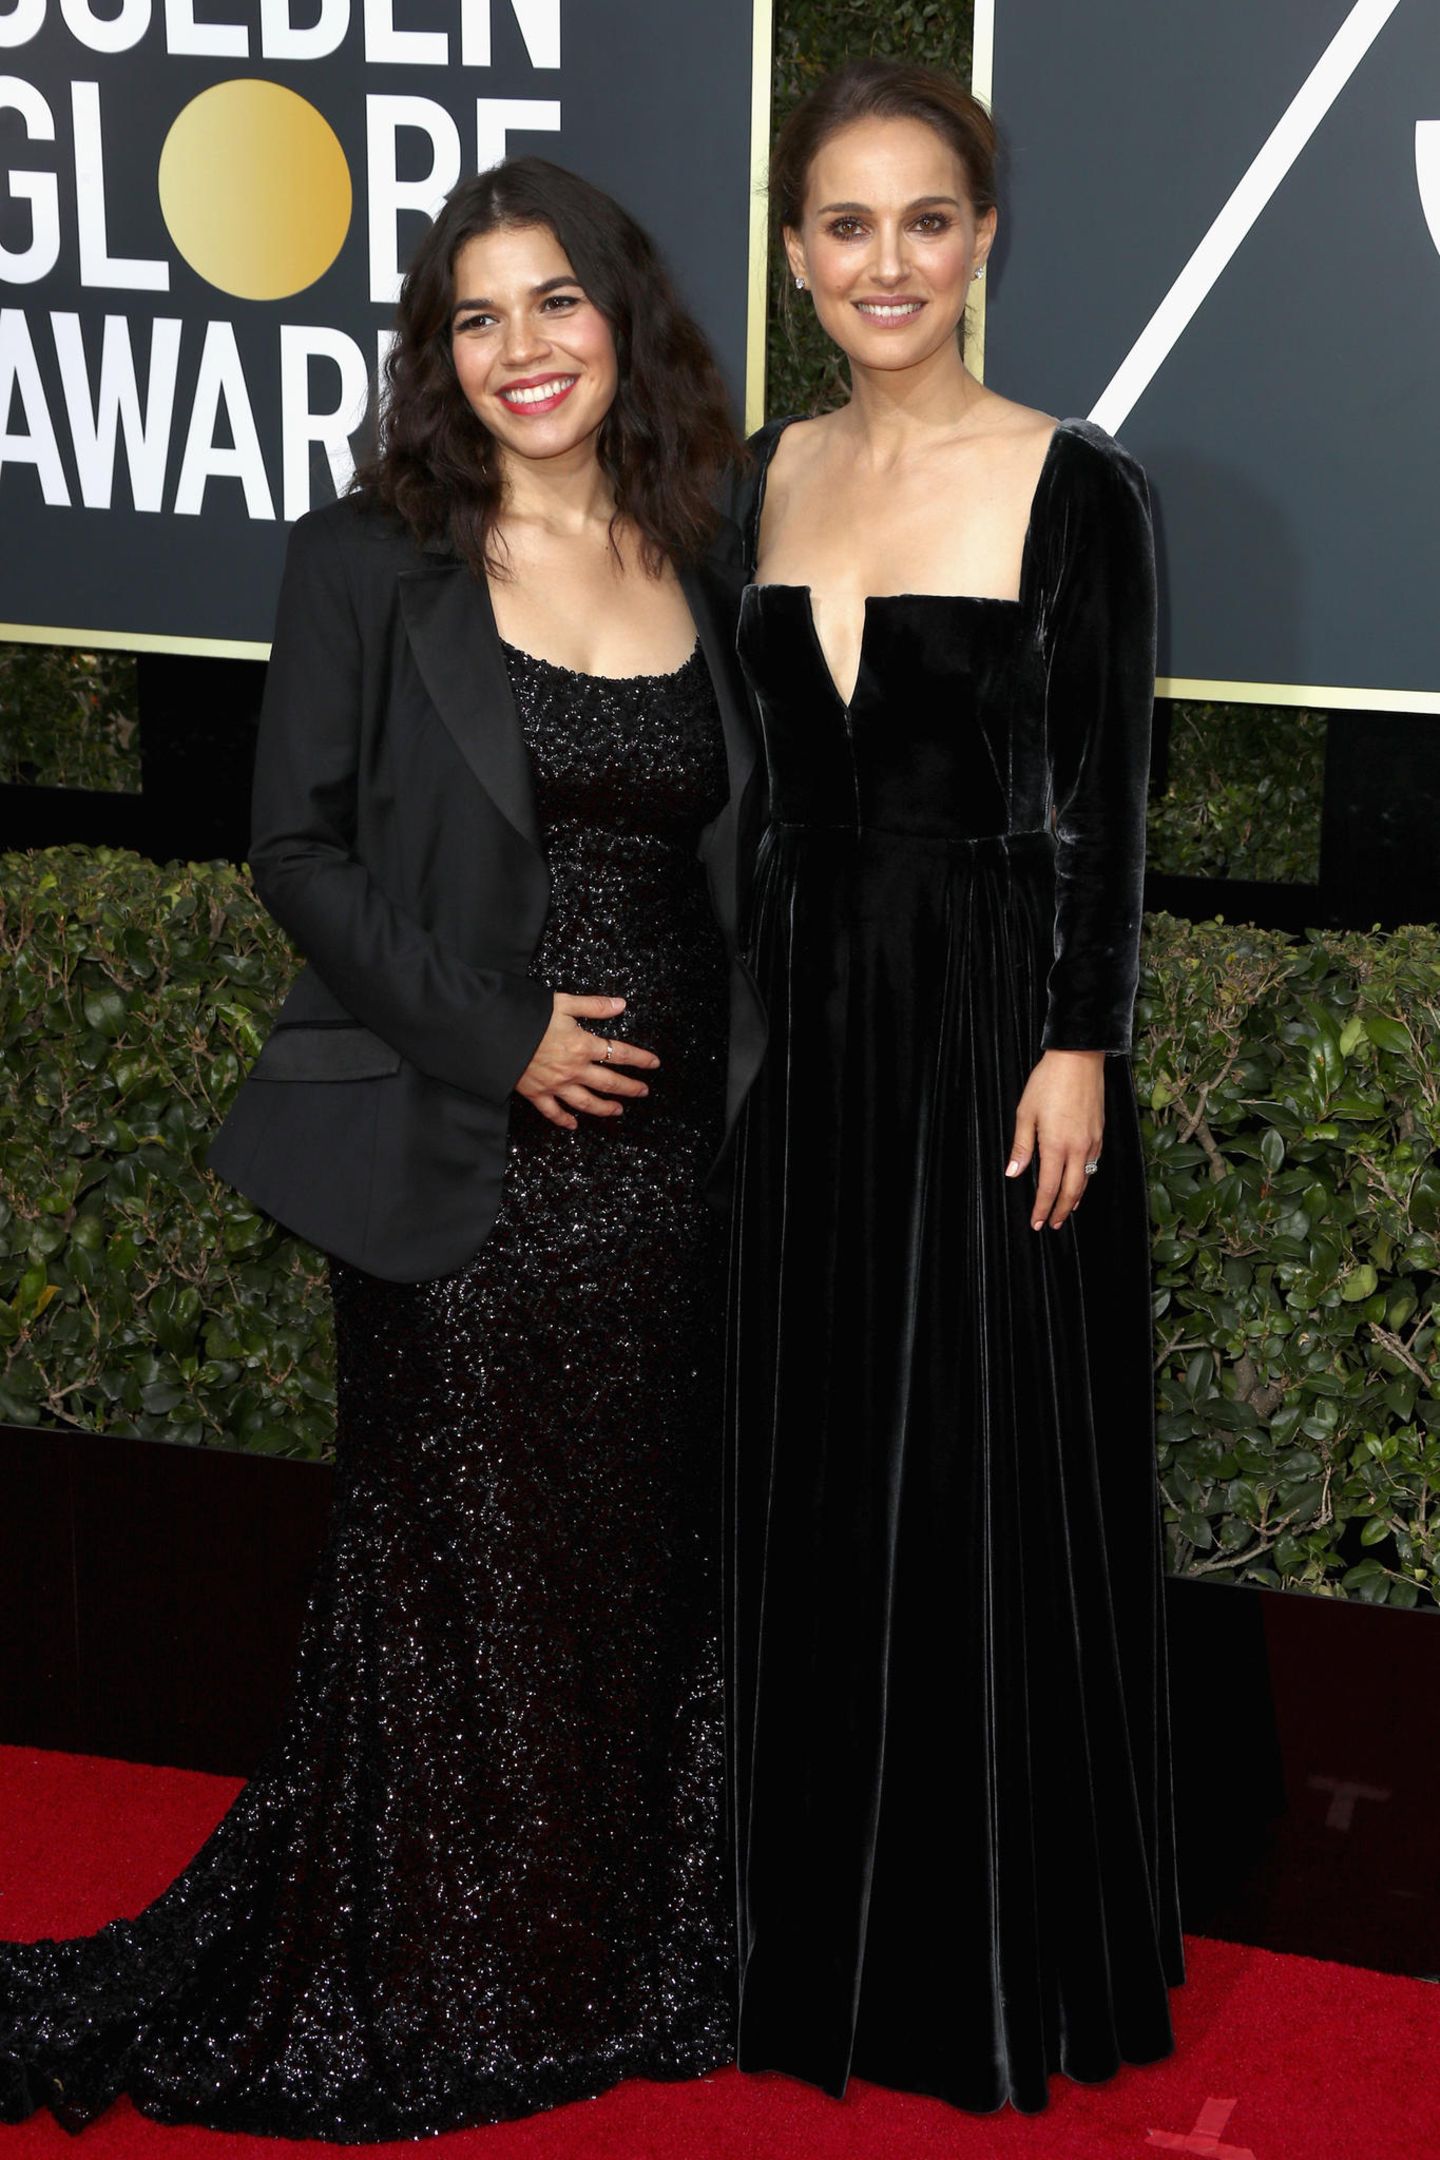 Golden Globes 2018: America Ferrera und Natalie Portman auf dem Roten Teppich